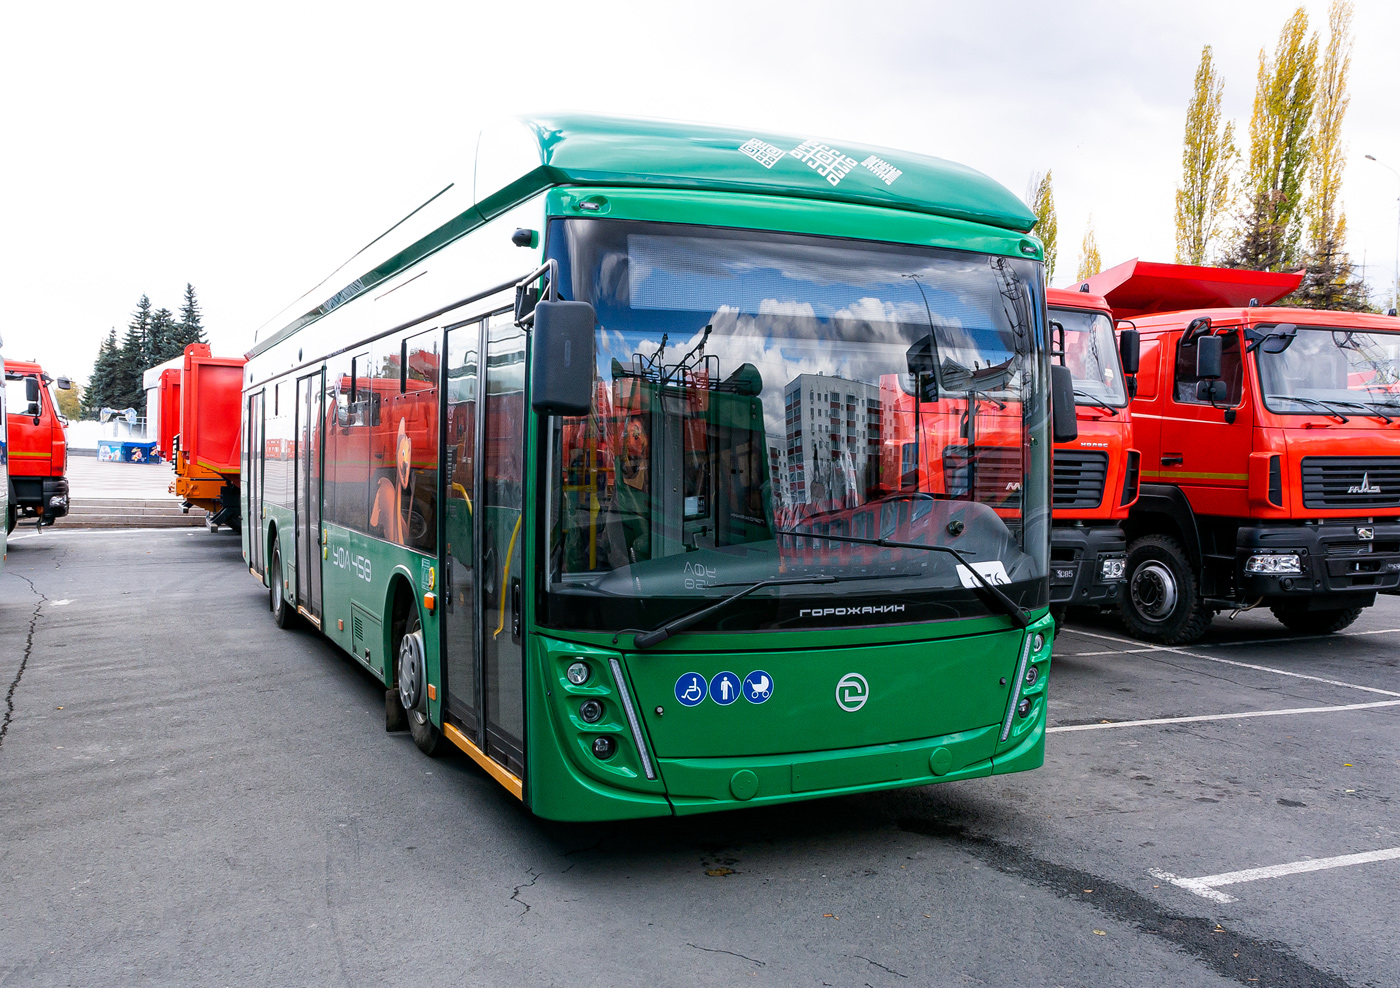 Ufa, UTTZ-6241.01 “Gorozhanin” č. 1076; Ufa — New BTZ trolleybuses